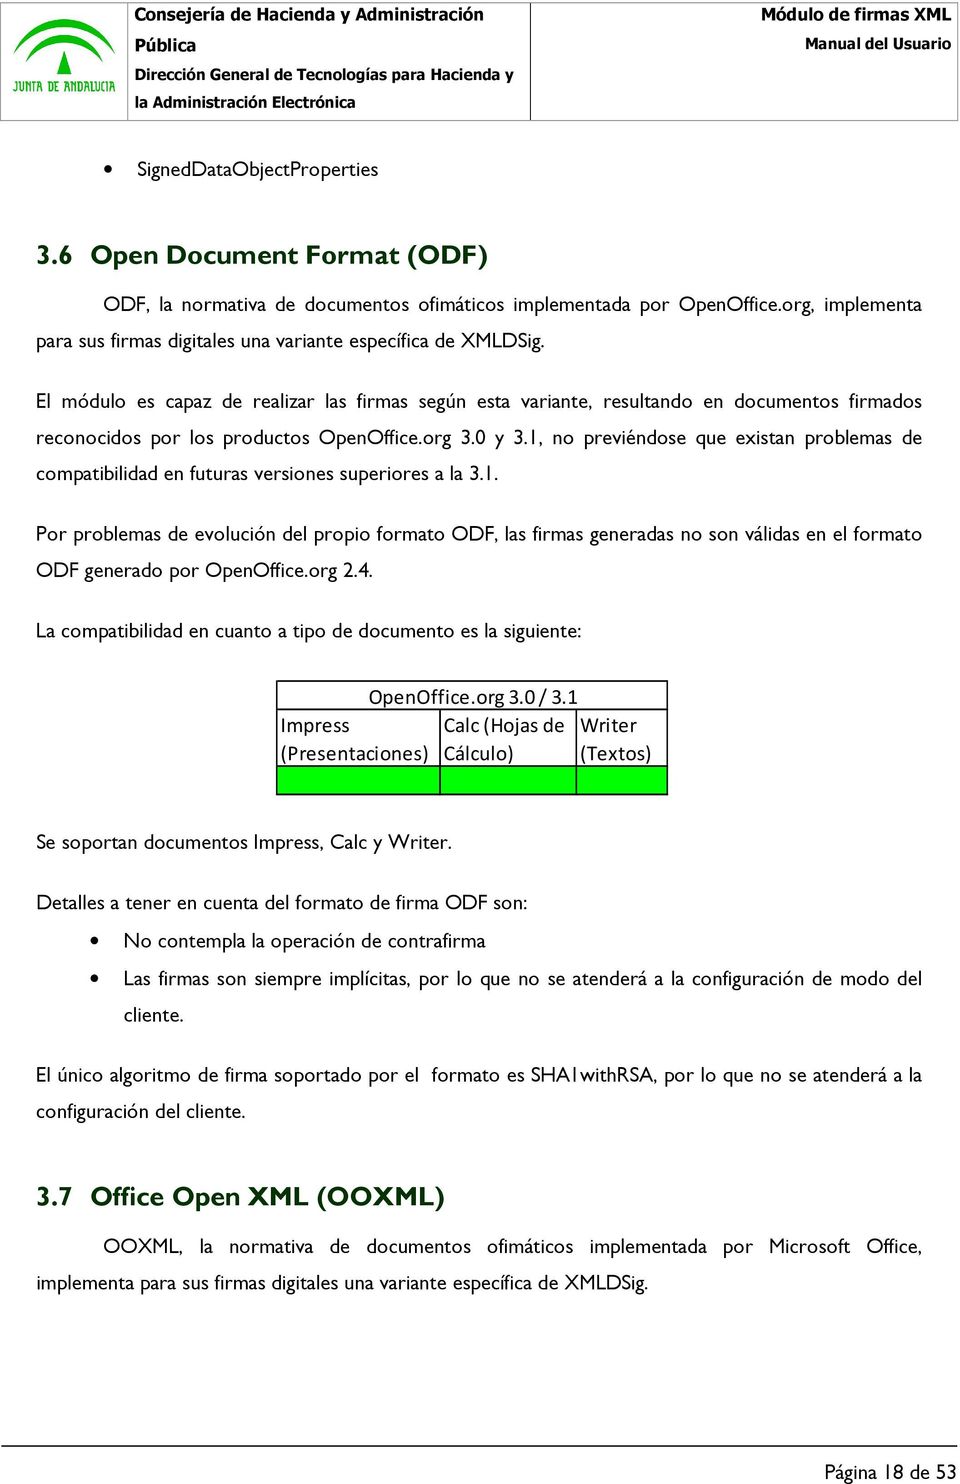 El módulo es capaz de realizar las firmas según esta variante, resultando en documentos firmados reconocidos por los productos OpenOffice.org 3.0 y 3.